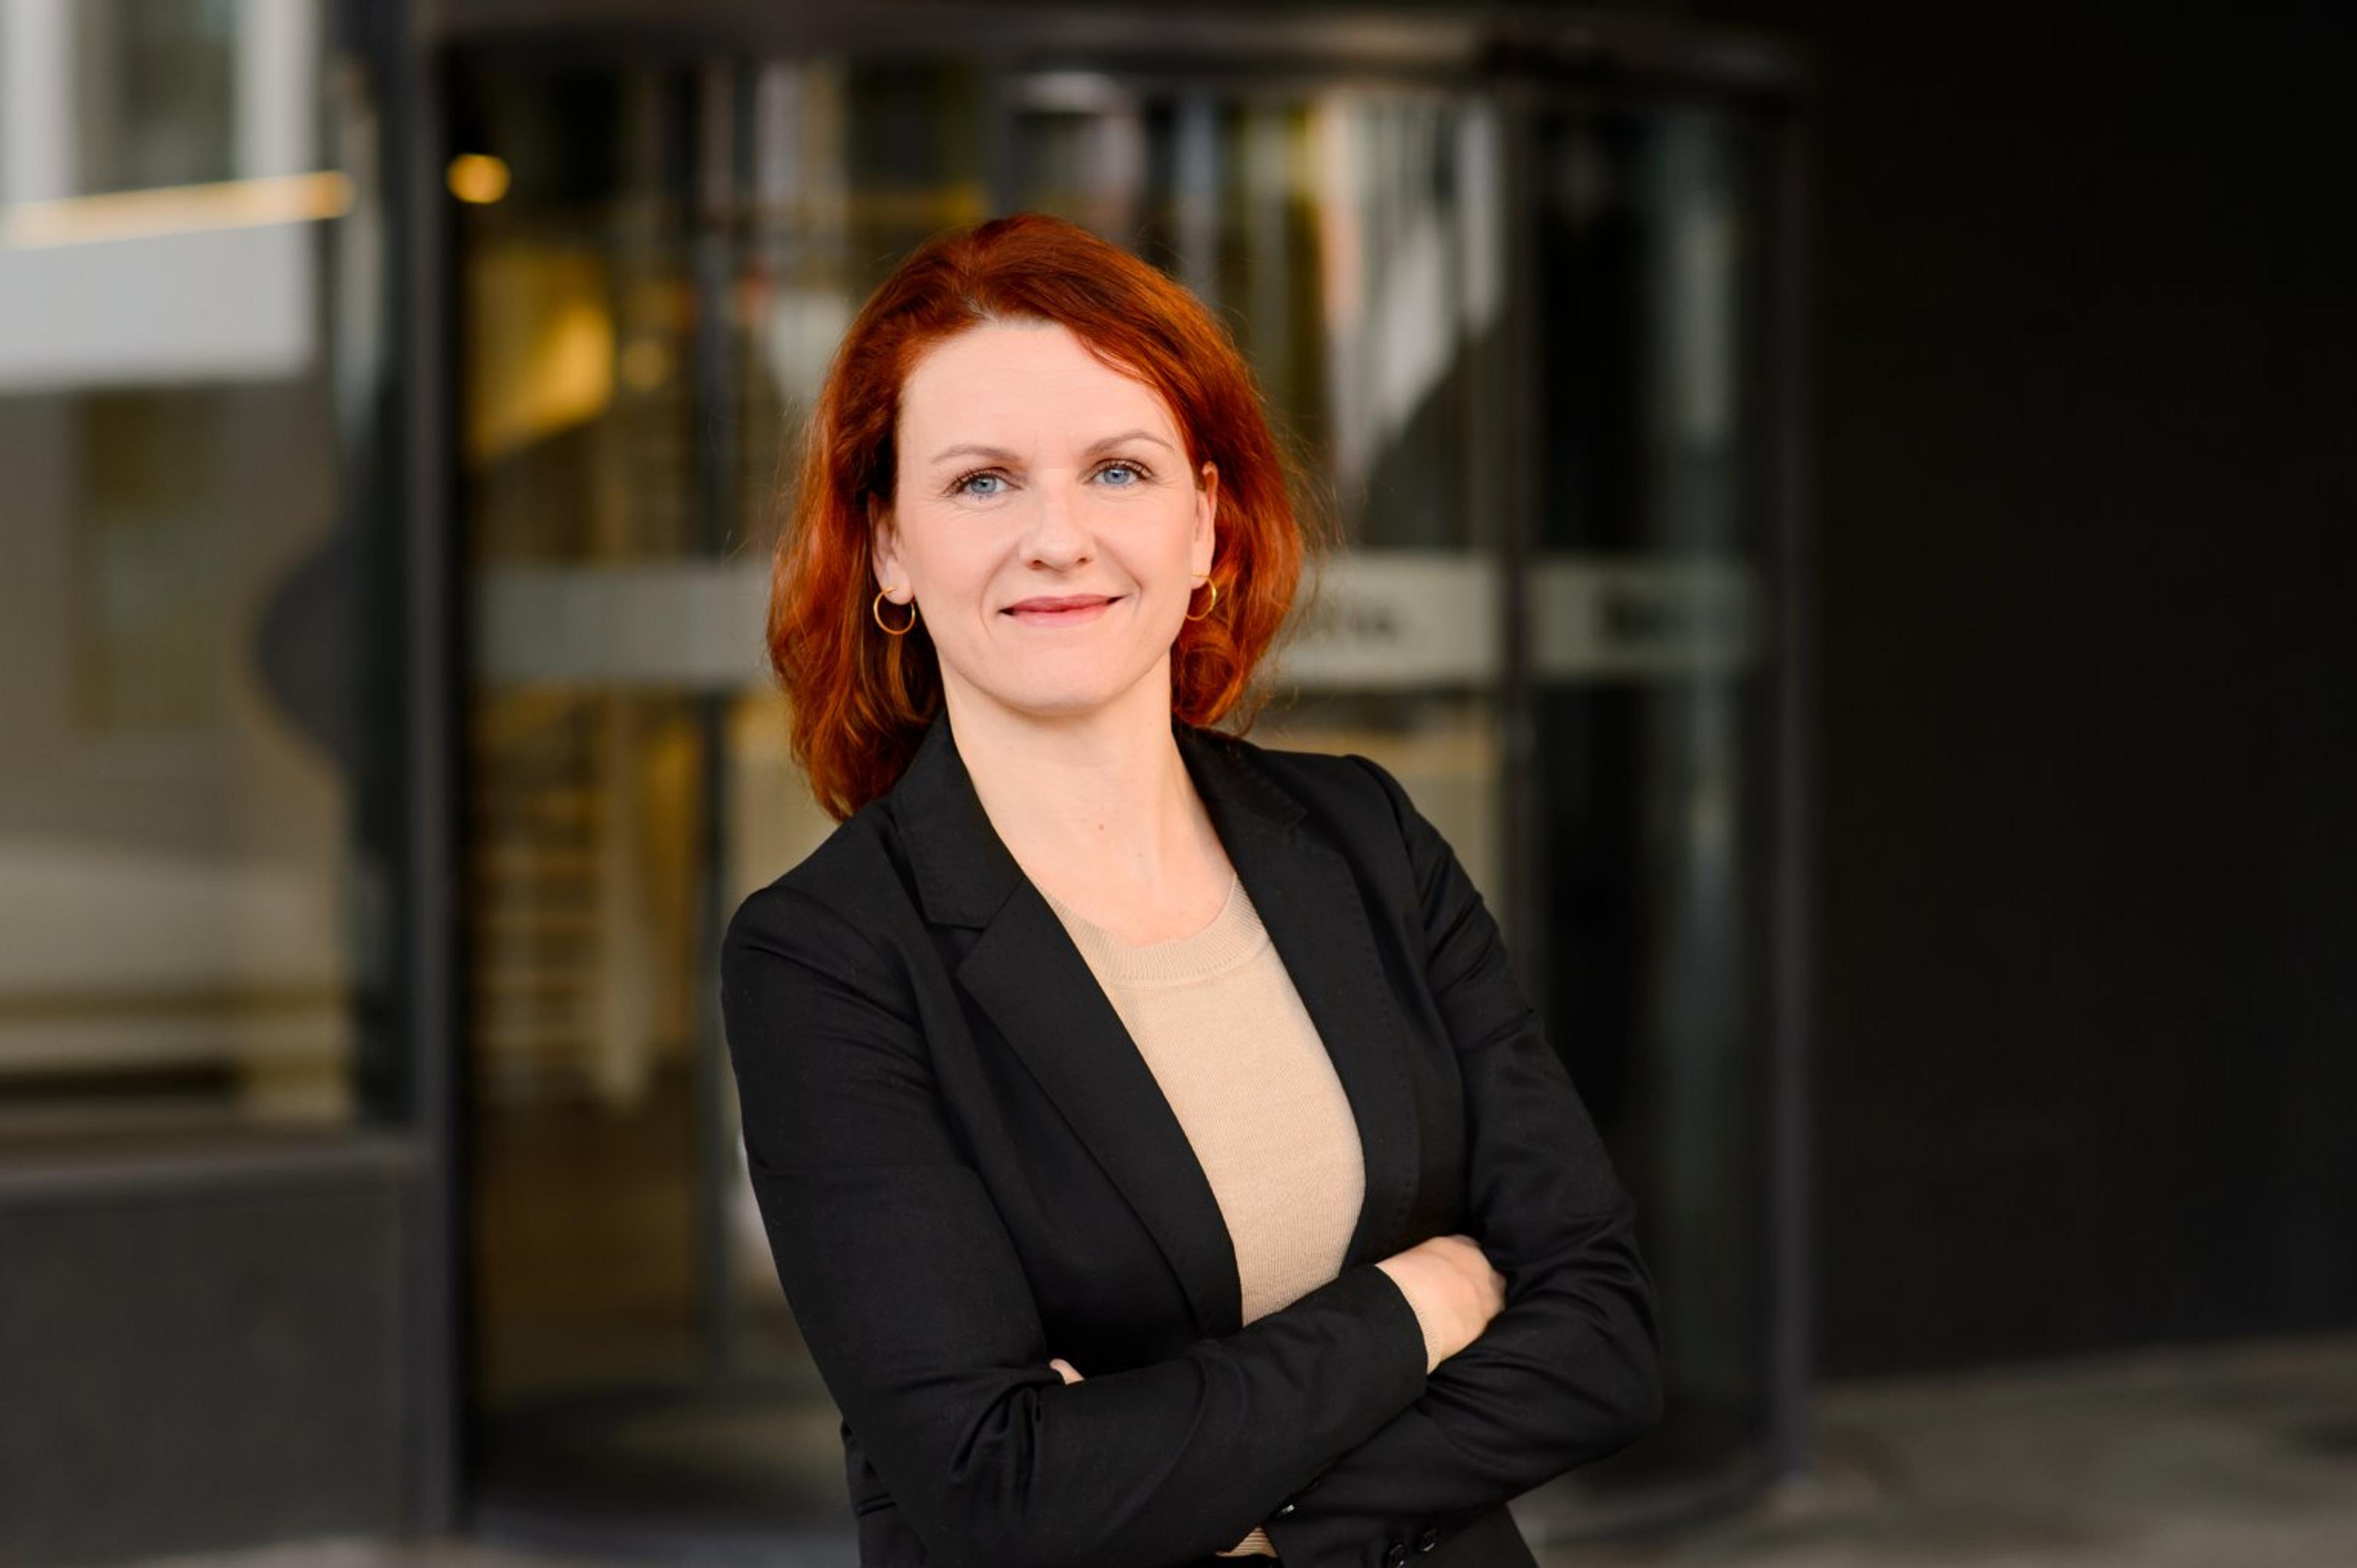 Cover Image for Rechtsanwältin Janine Hardi im Interview: Über ihre Erfahrungen als Investorenvertreterin in einer männerlastigen Finance-Welt